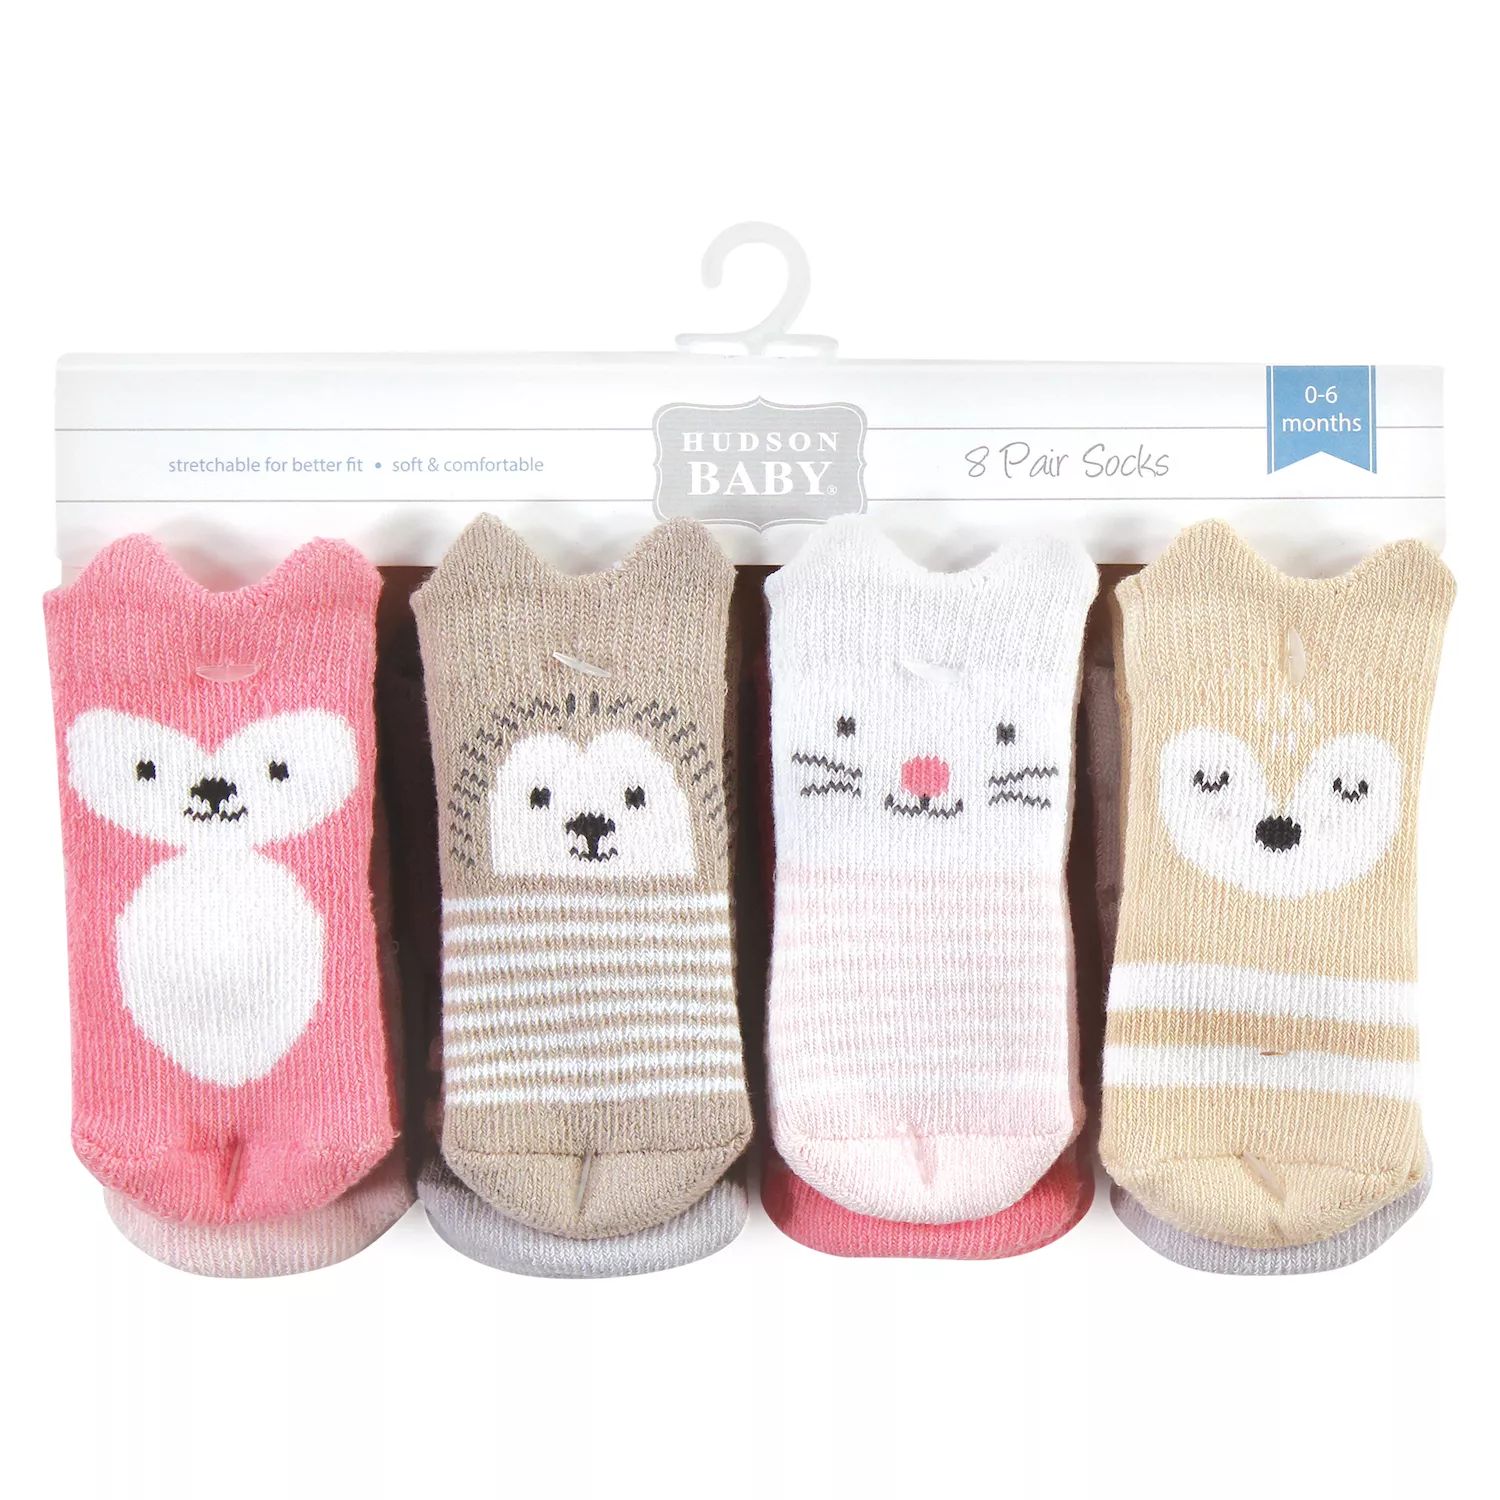 Носки Hudson для новорожденных девочек, хлопковые и махровые носки для новорожденных, Woodland для девочек, 8 шт. Hudson Baby